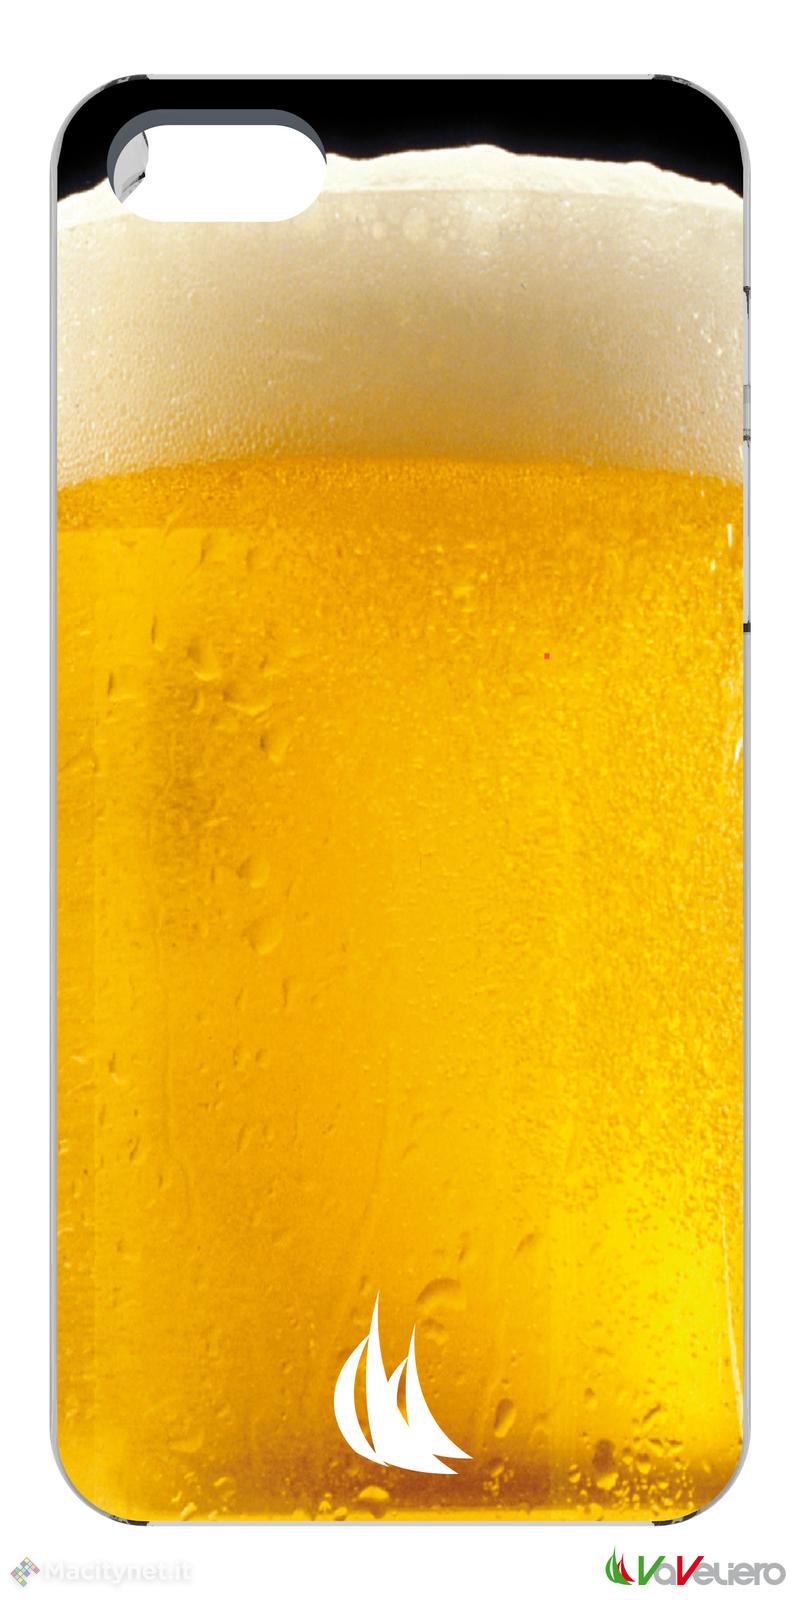 iPhone 5 diventa un boccale di birra, un fotocamera e altro ancora con le cover VaVeliero